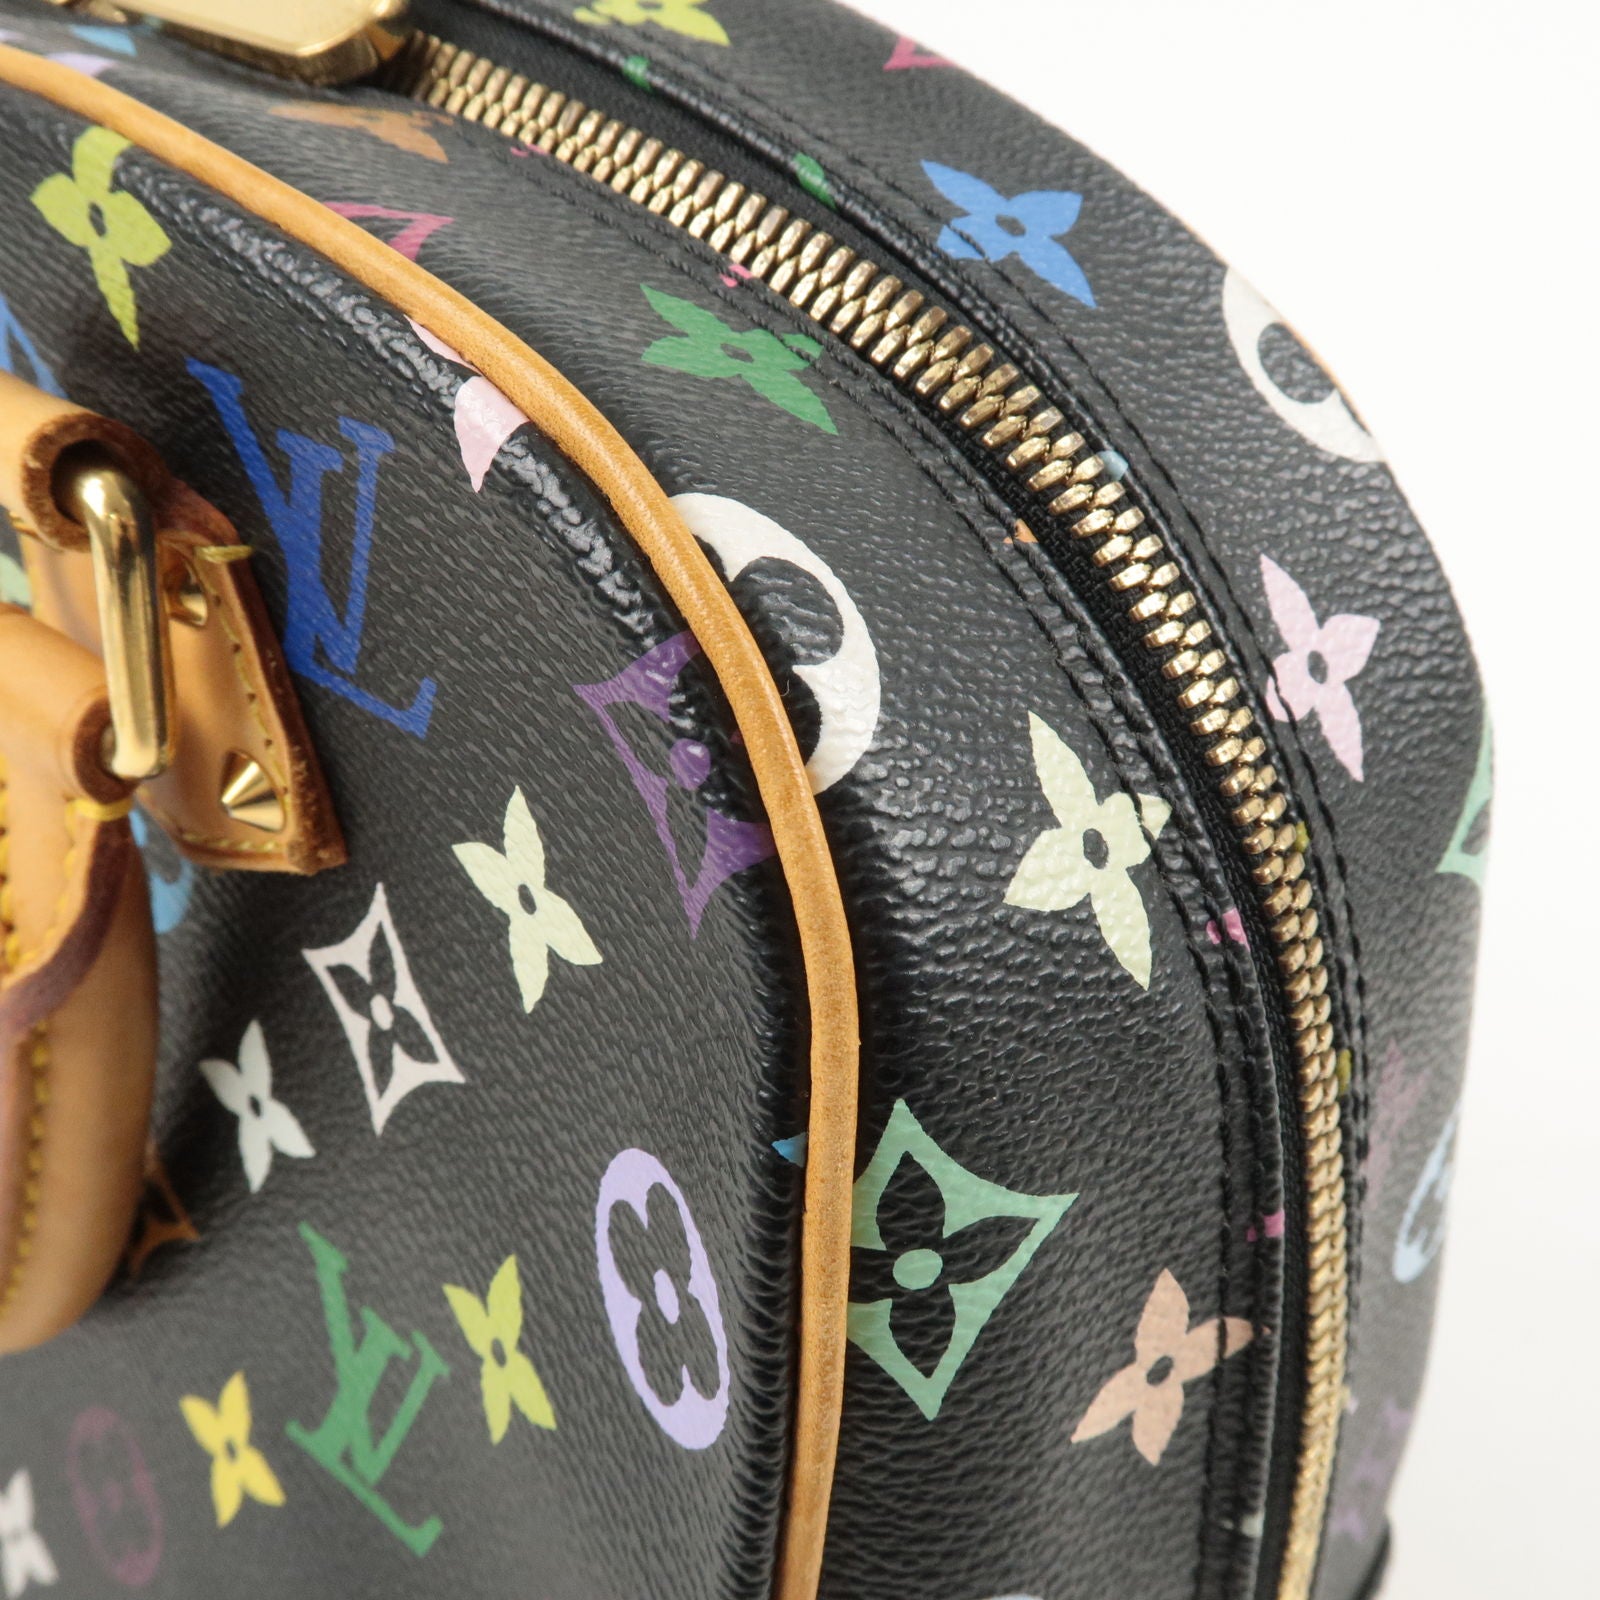 Louis Vuitton Trouville Bag Review 